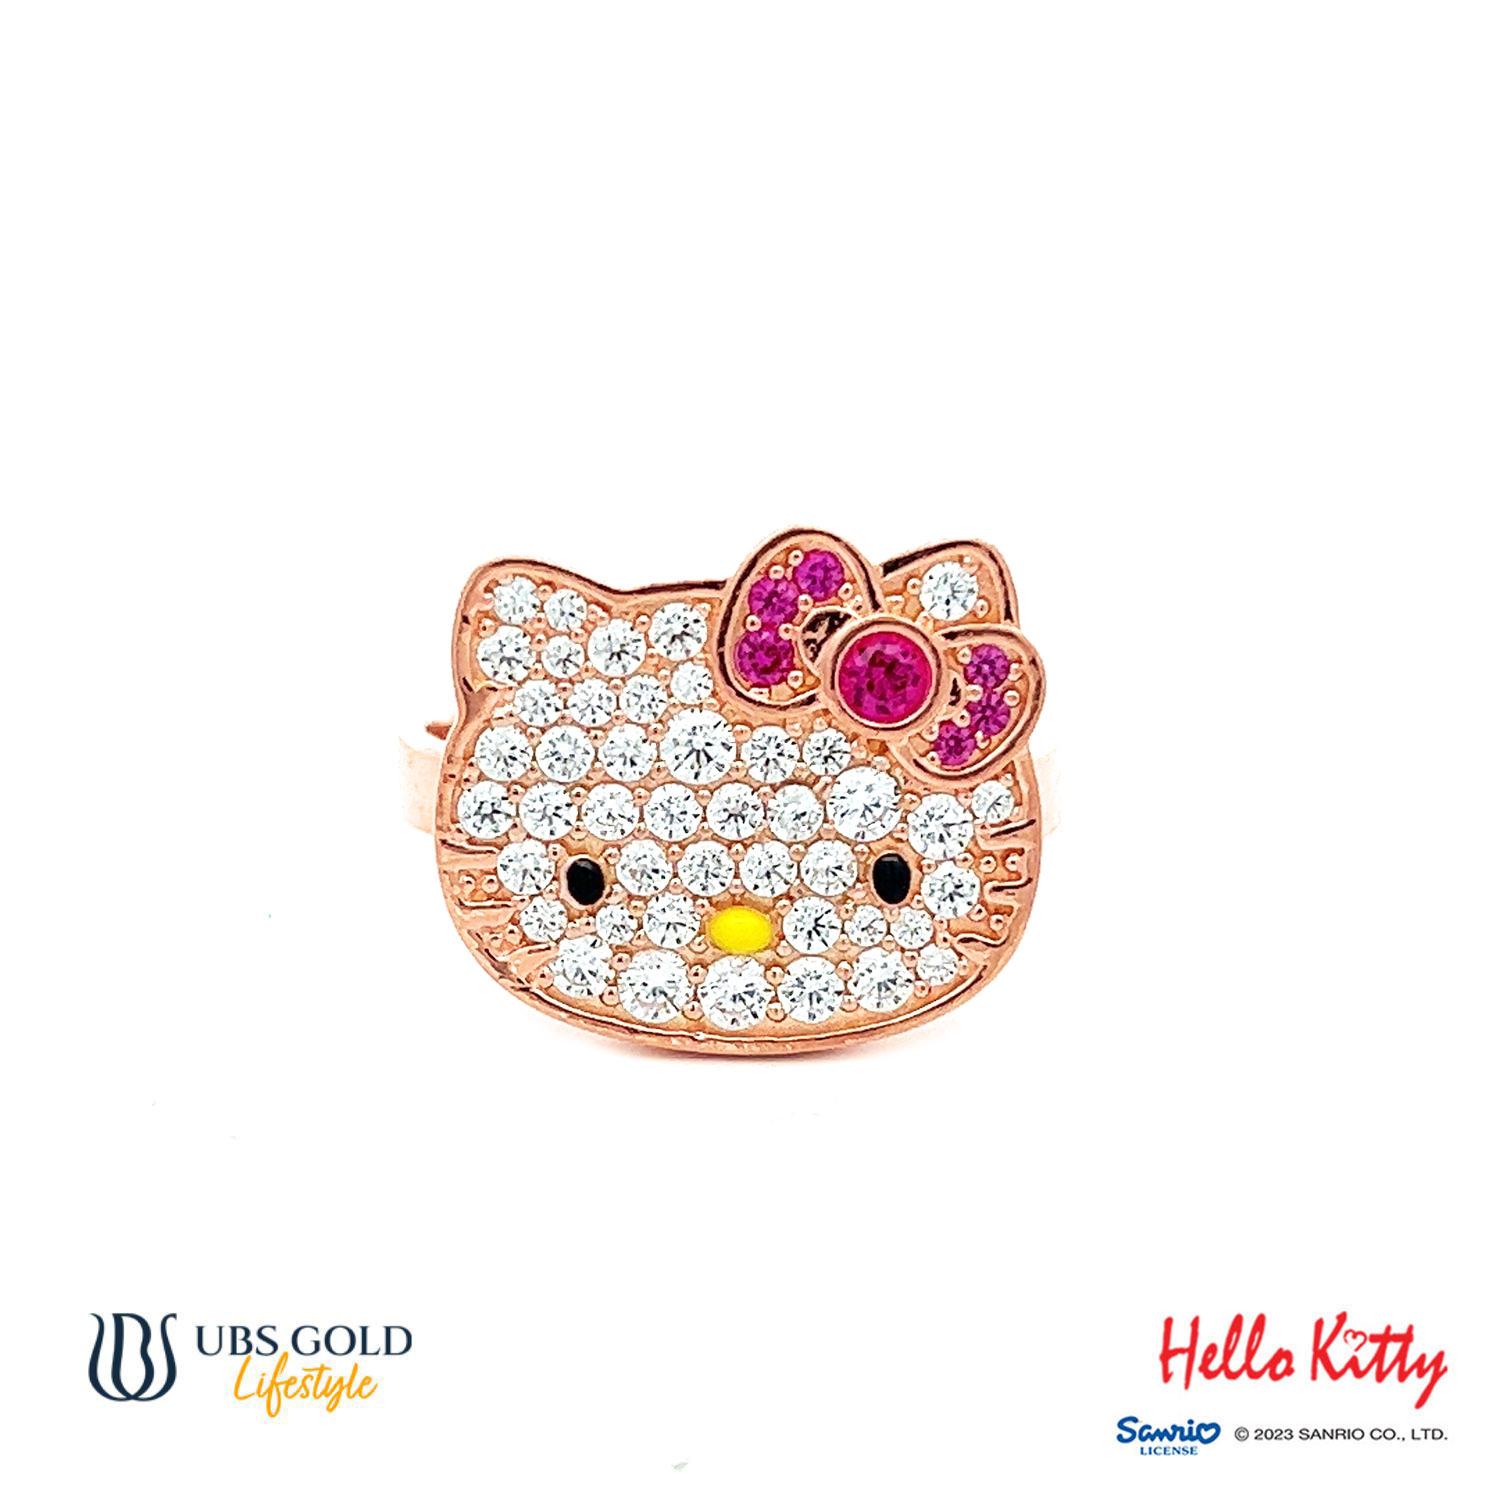 UBS Gold Cincin Emas Sanrio Hello Kitty - Ccz0001 - 17K